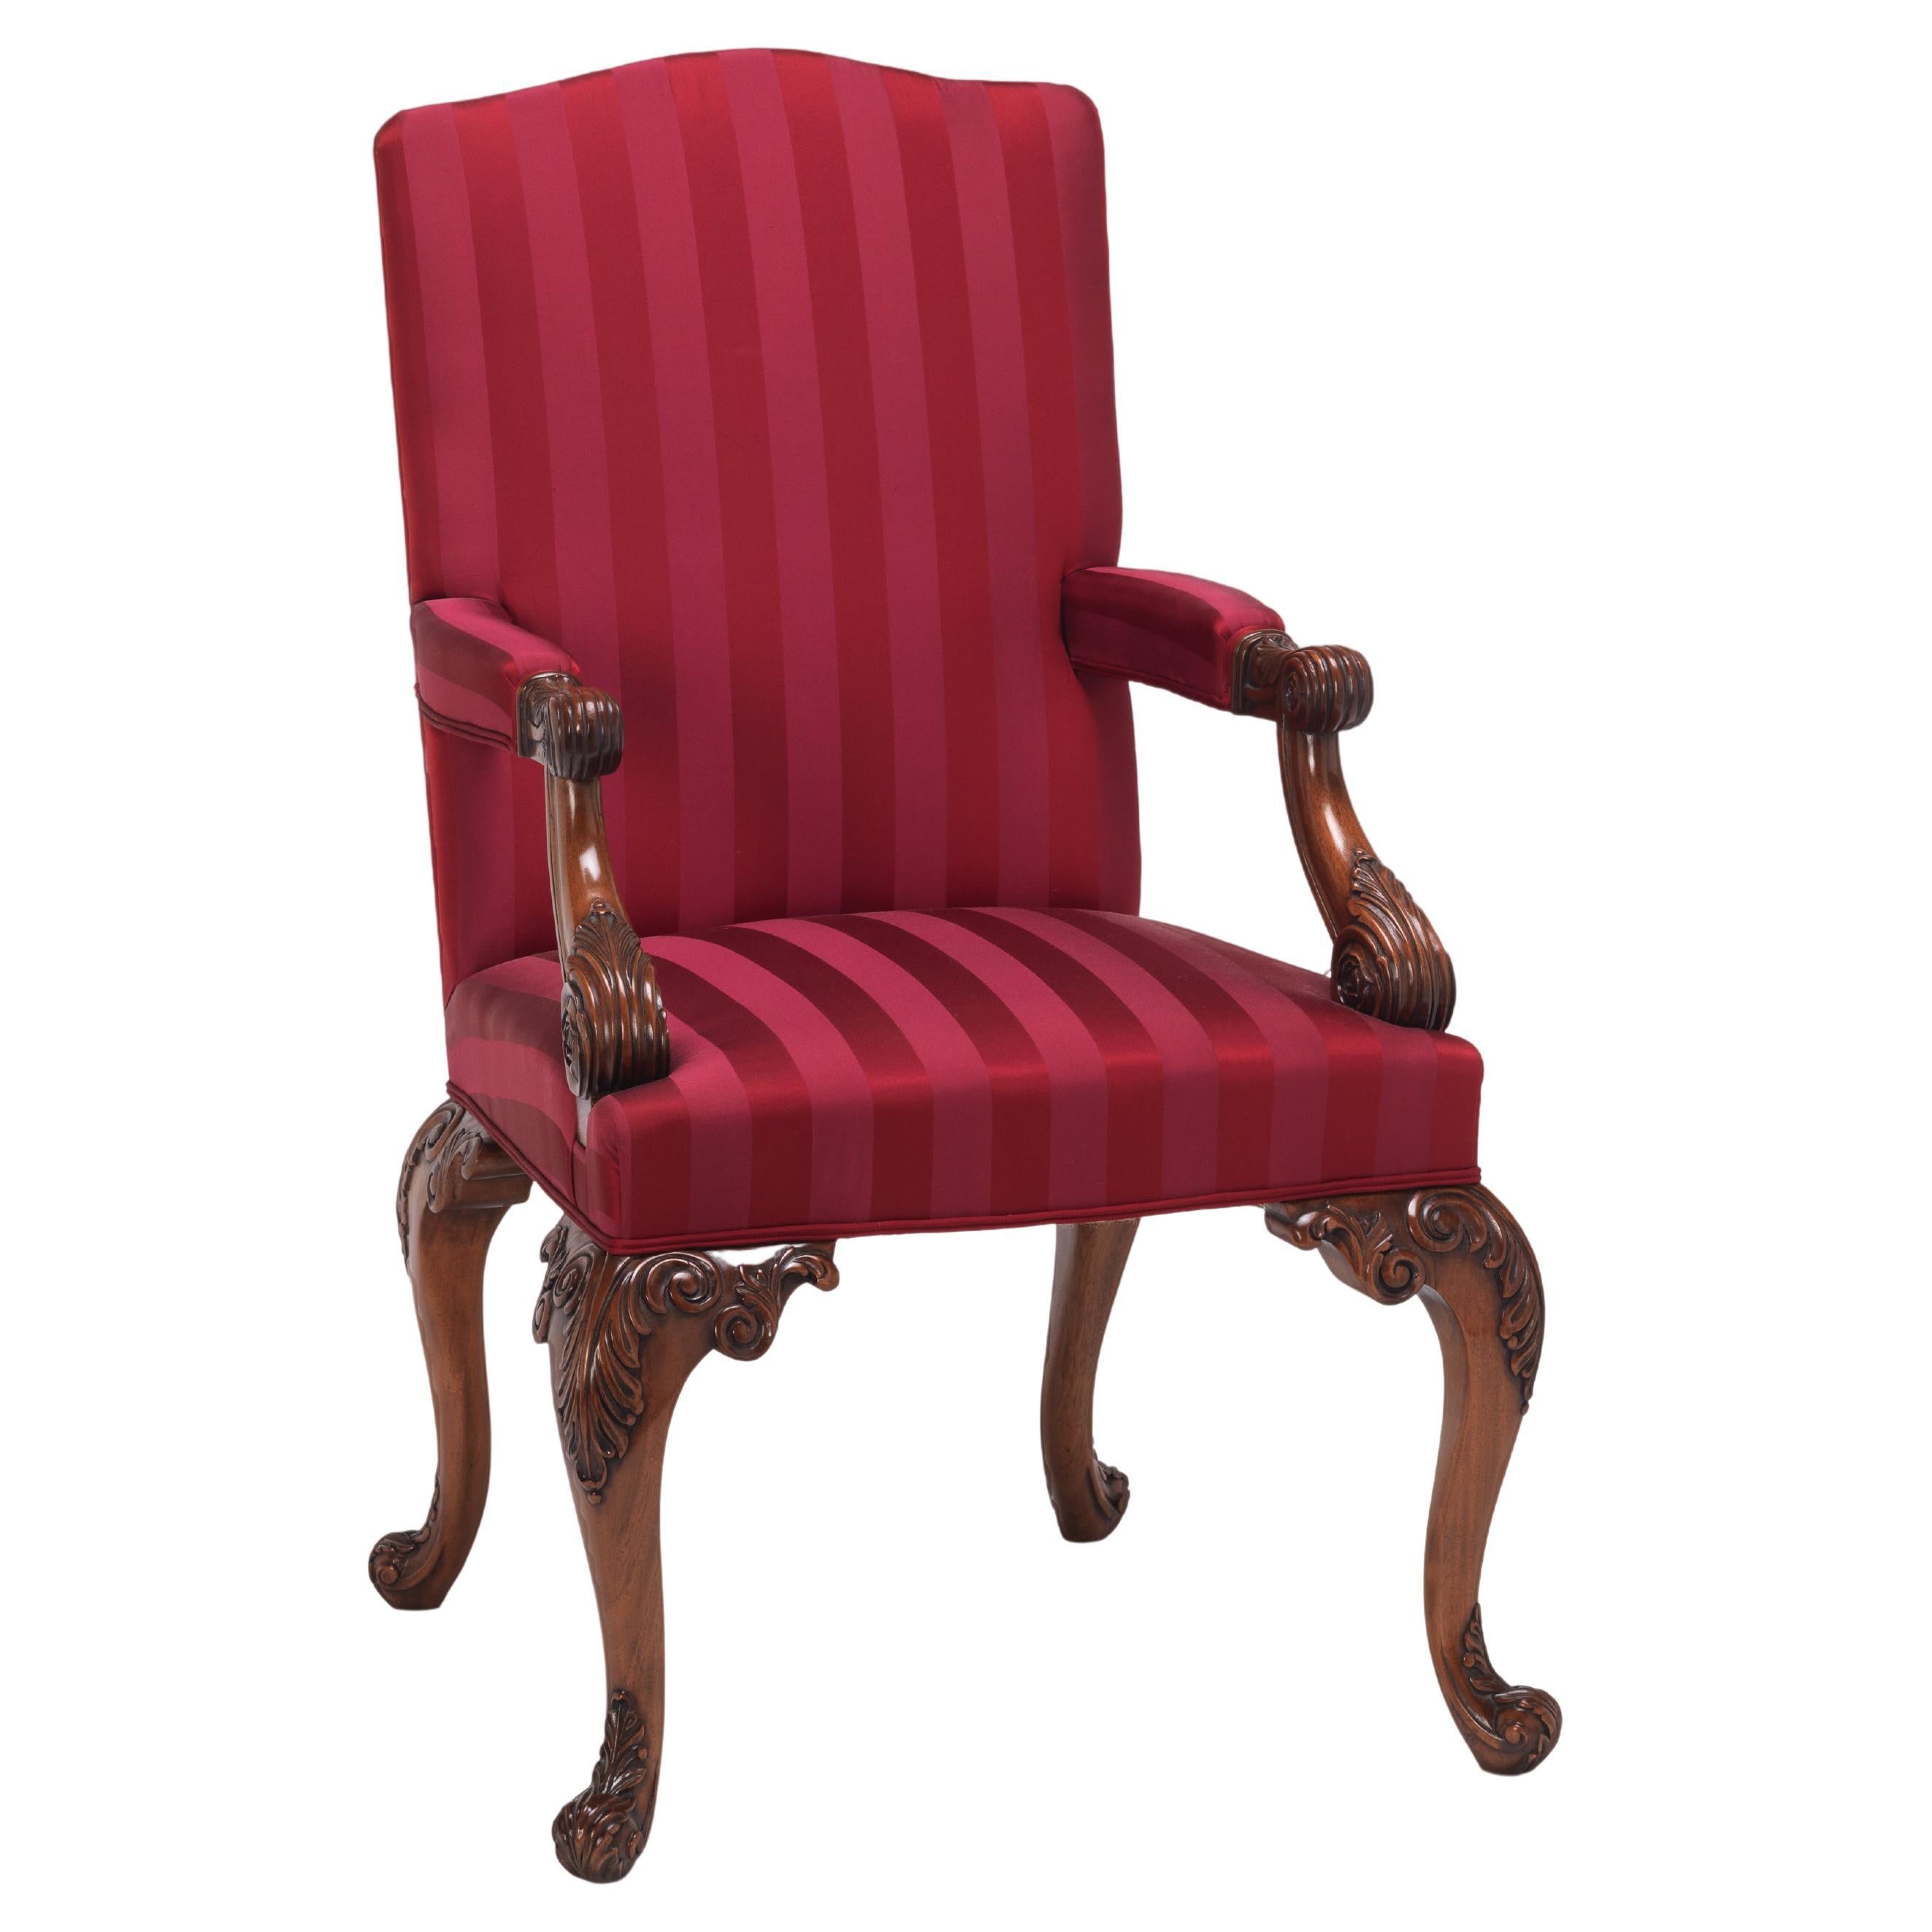 Plitman Banquet Chair For Sale